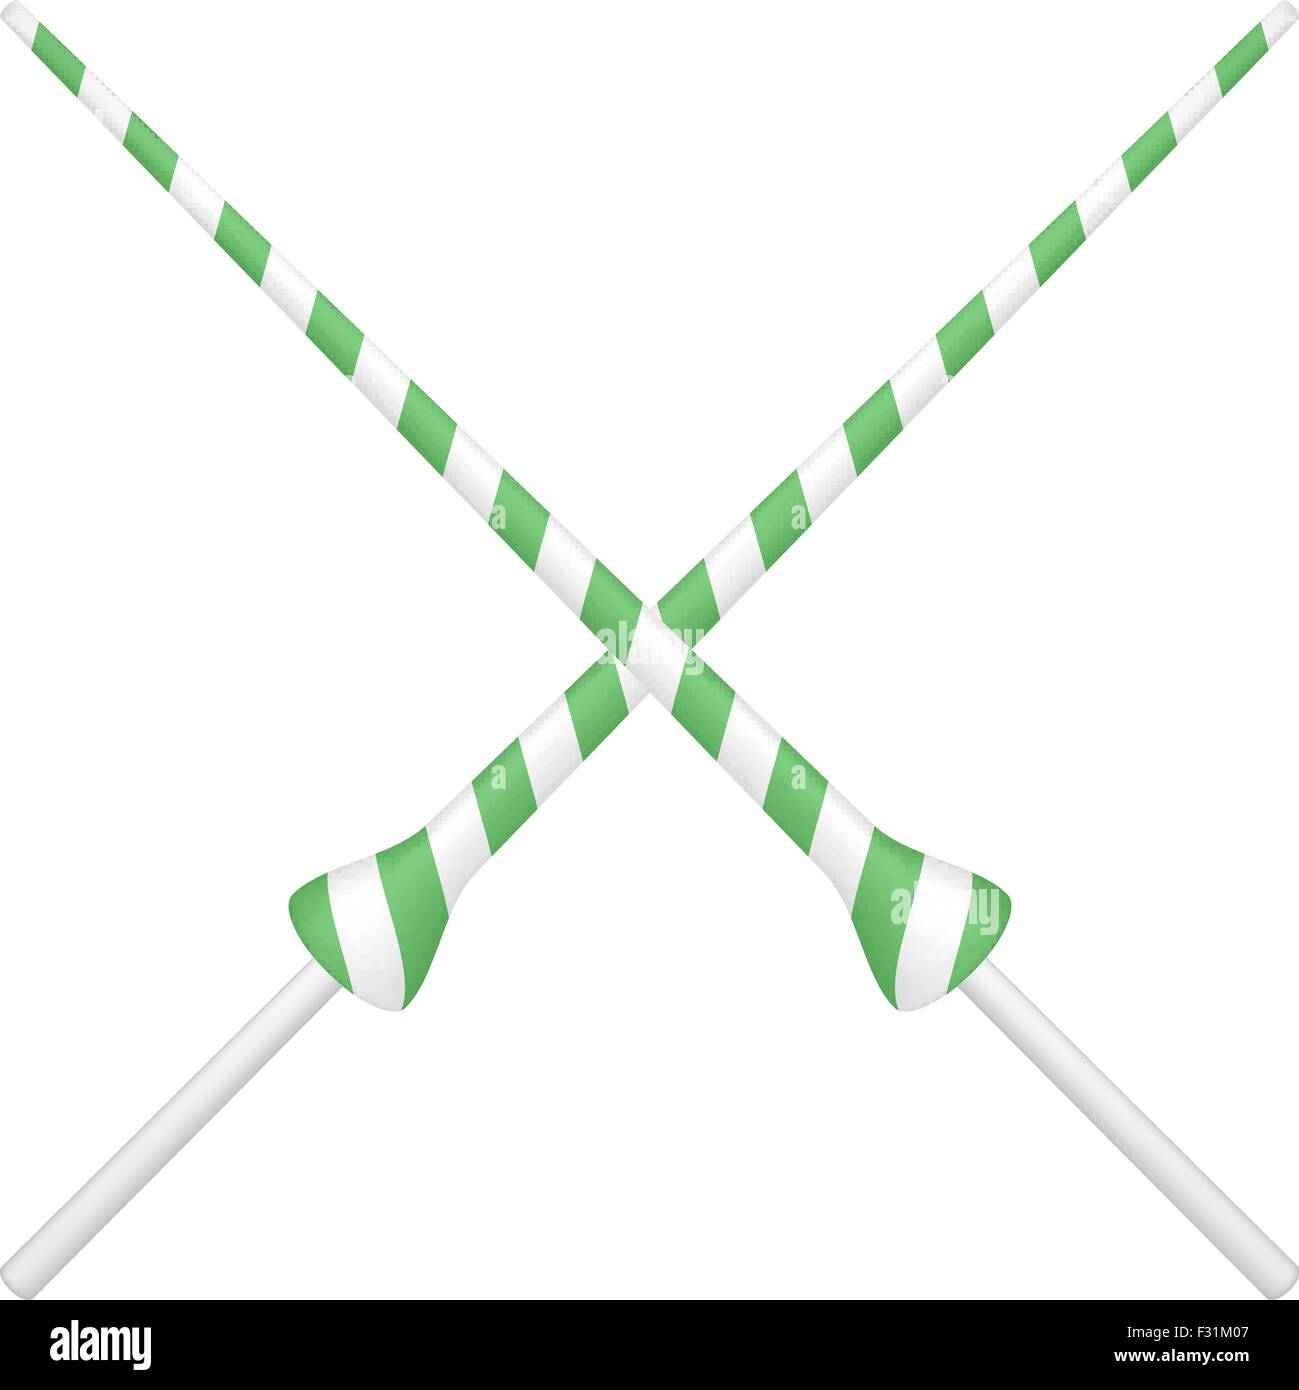 Zwei gekreuzte Lanzen im grün-weißen design Stock Vektor